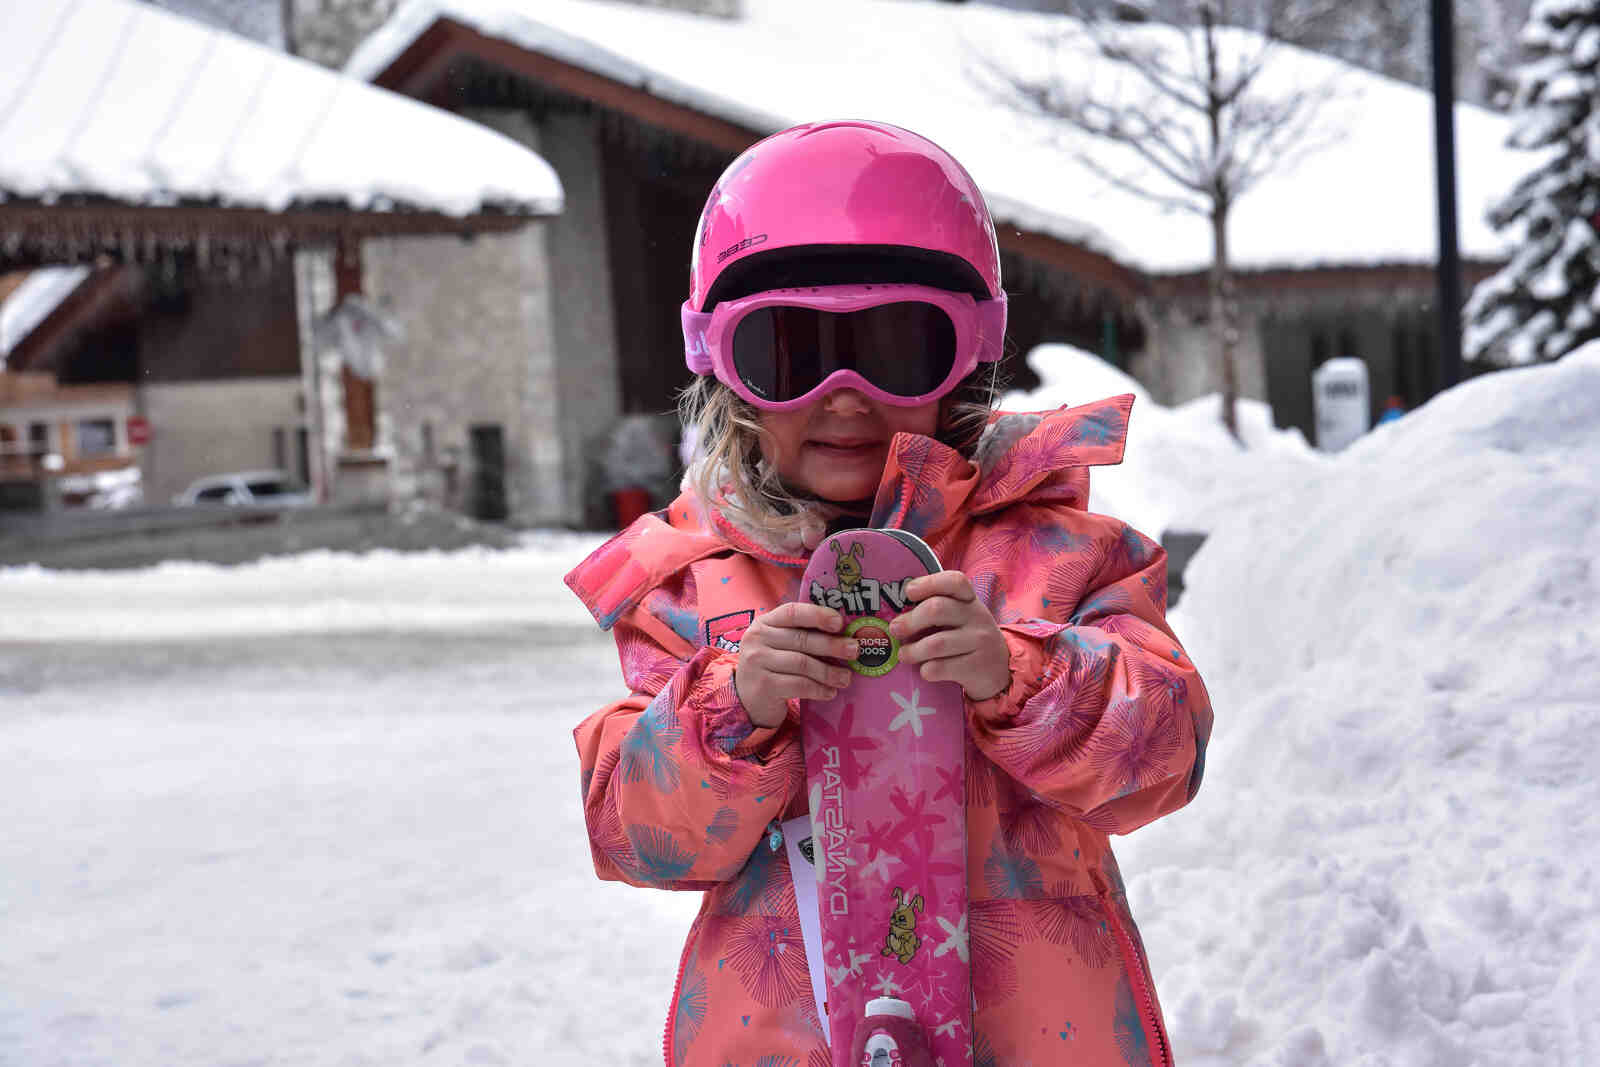 Comment apprendre à skier à 5 ans?